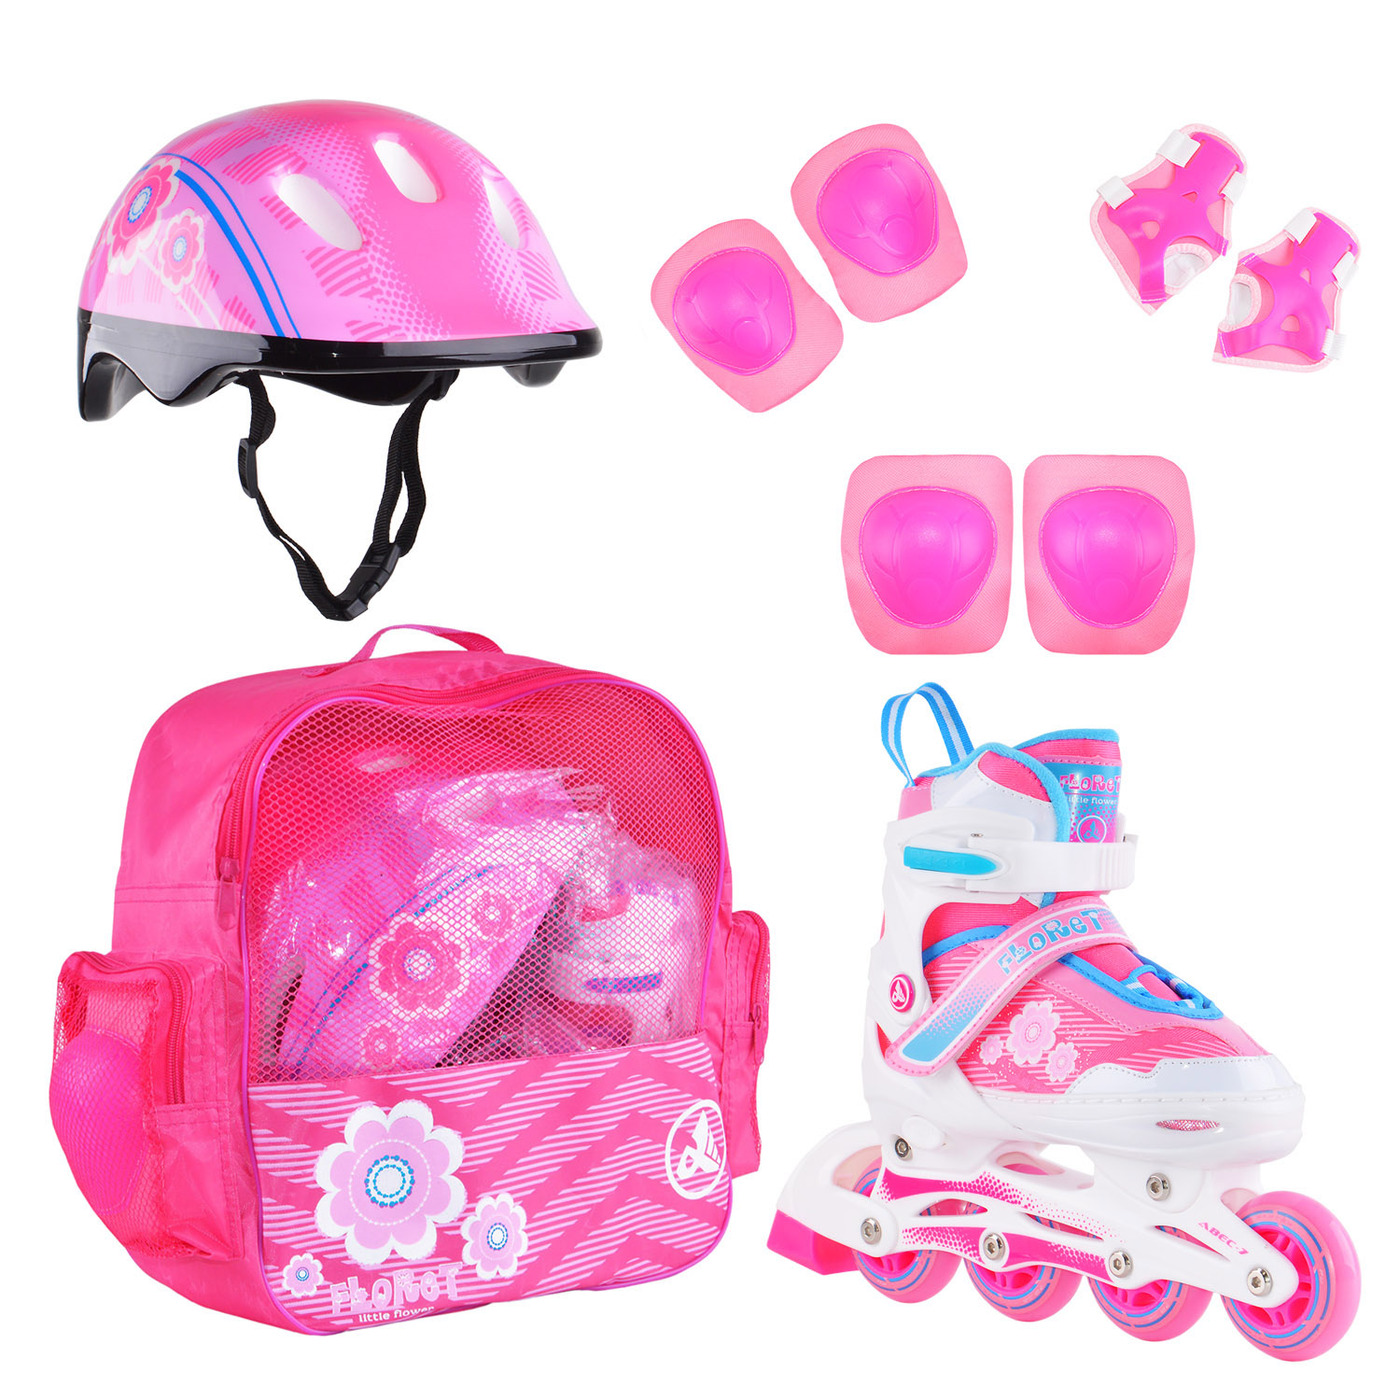 Раздвижные роликовые коньки Alpha Caprice FLORET Wh/Pink/Bl, шлем, защита, сумка S:31-34 раздвижные роликовые коньки alpha caprice soul pink